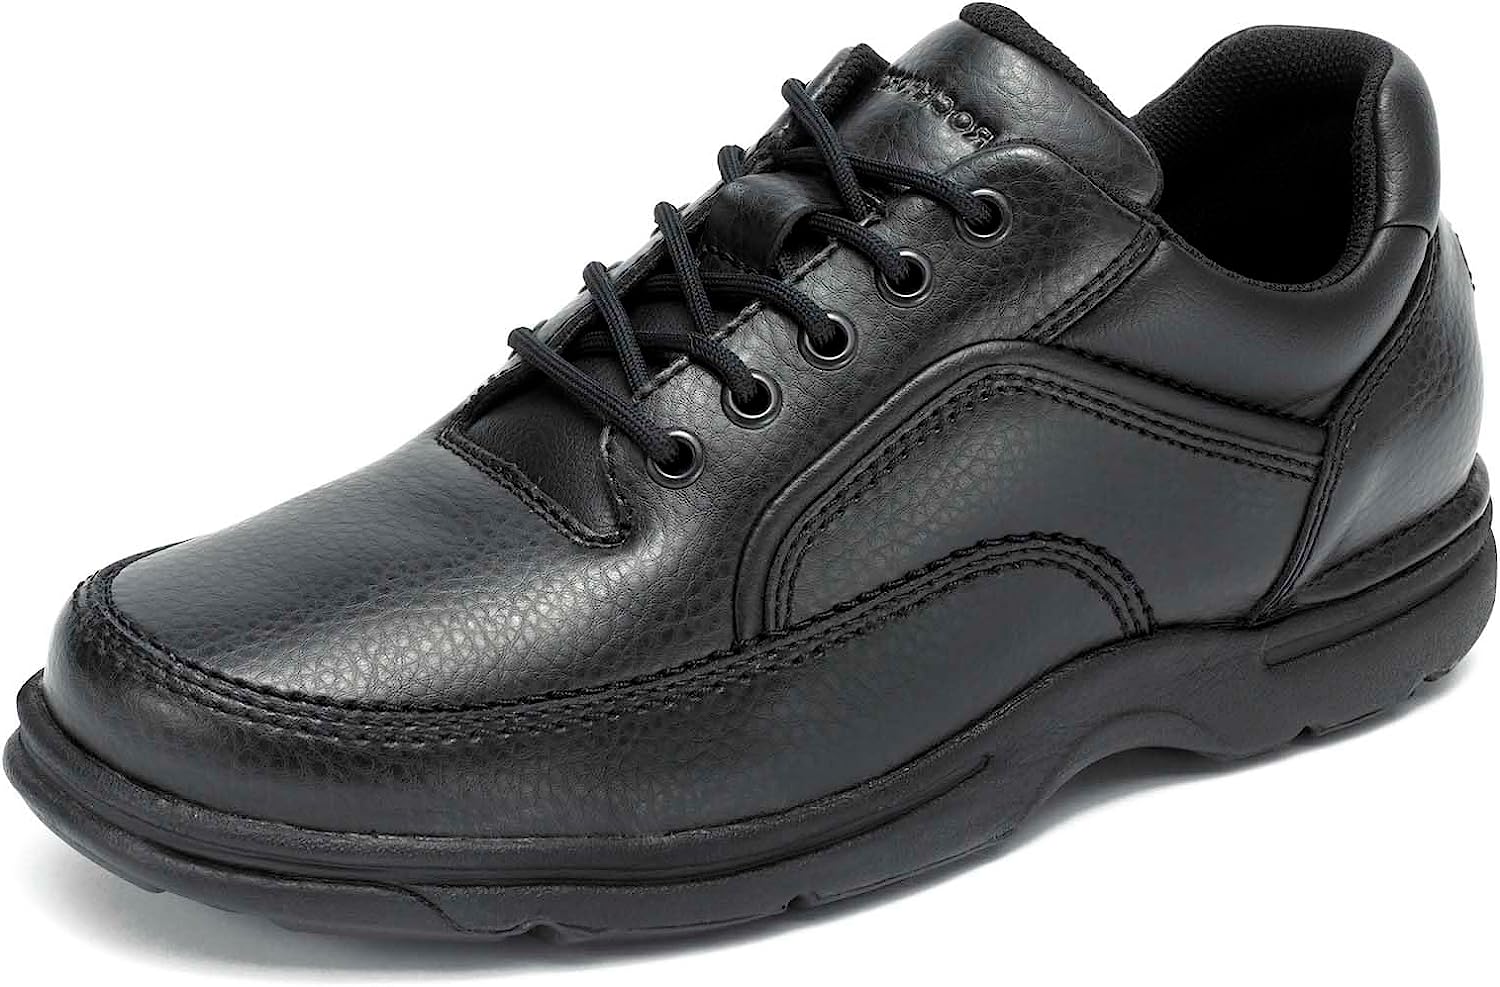 Rockport Men's Eureka Walking Shoe Sneaker